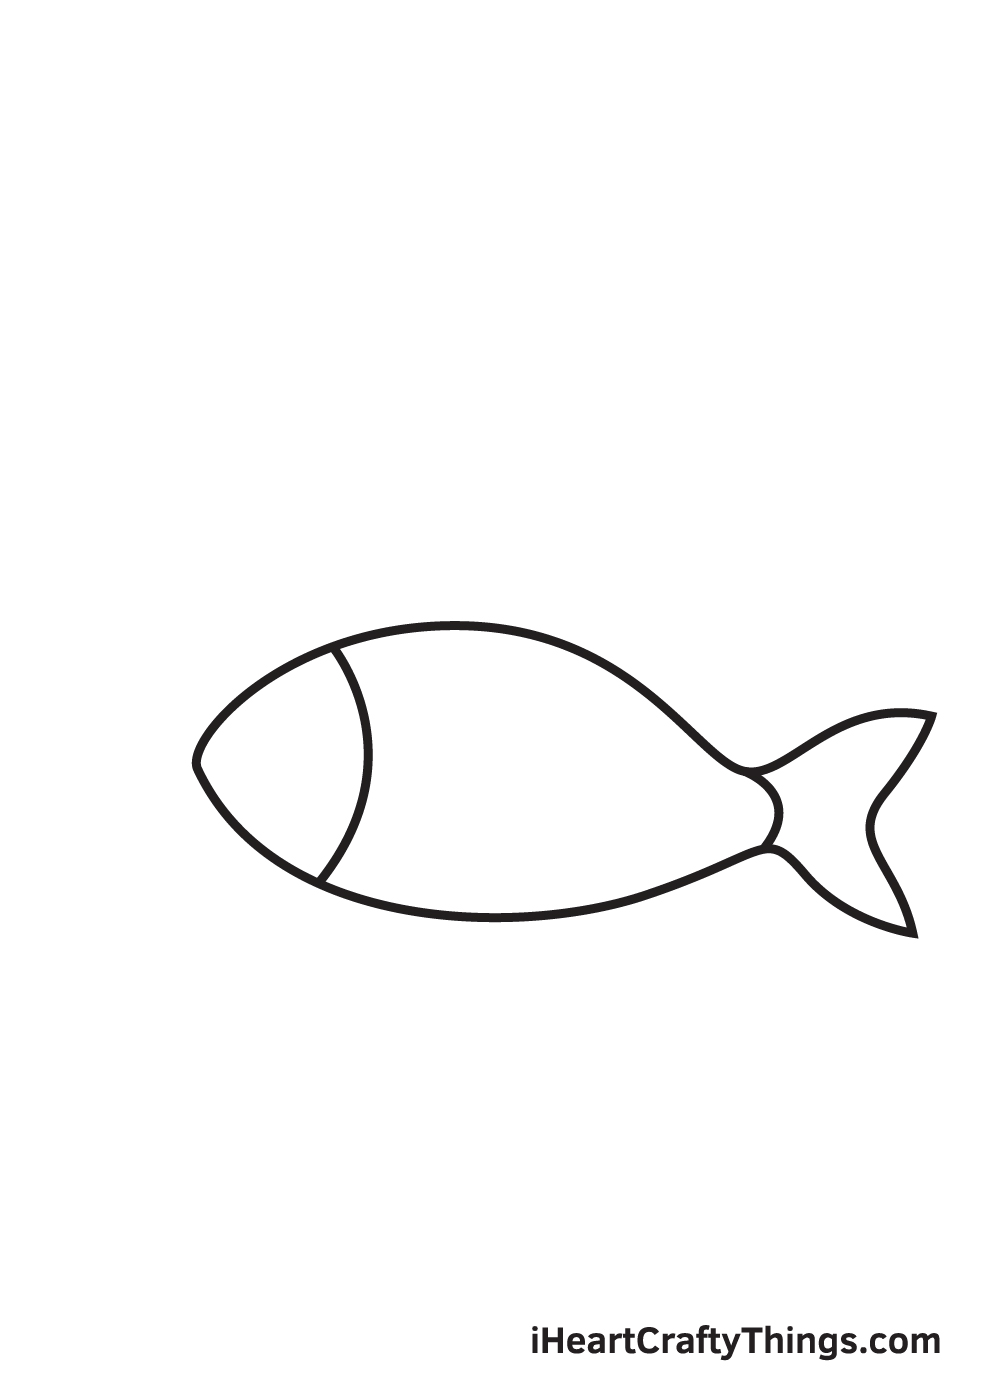 Archer Fish by Rachel Wolfe on Dribbble